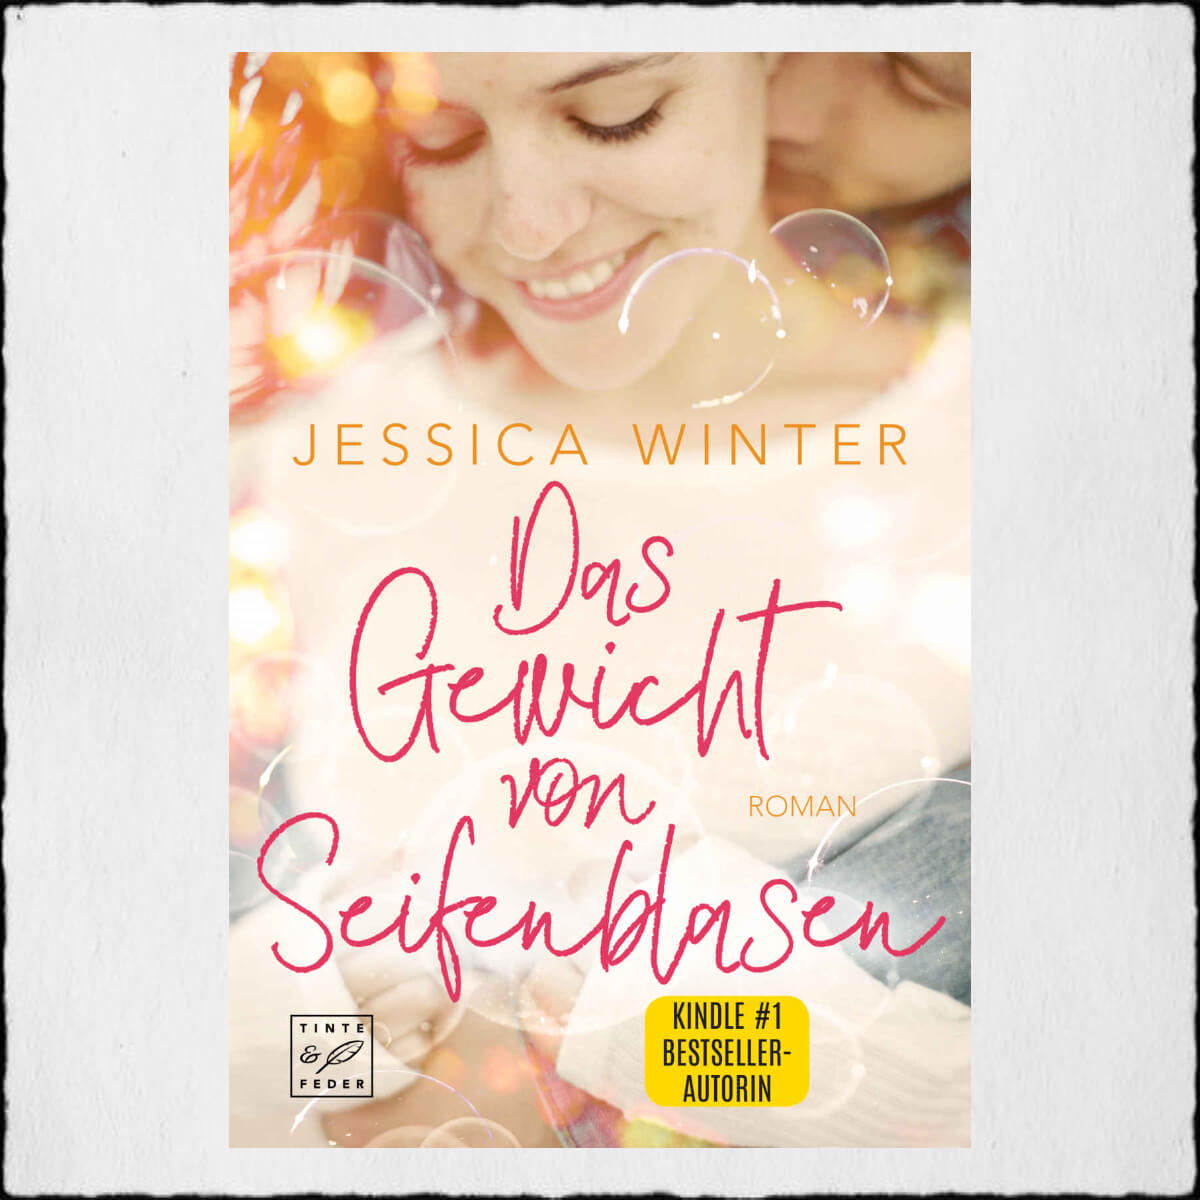 Jessica Winter "Das Gewicht von Seifenblasen" © 2020 Jessica Winter in Selbstpublikation - Tinte & Feder